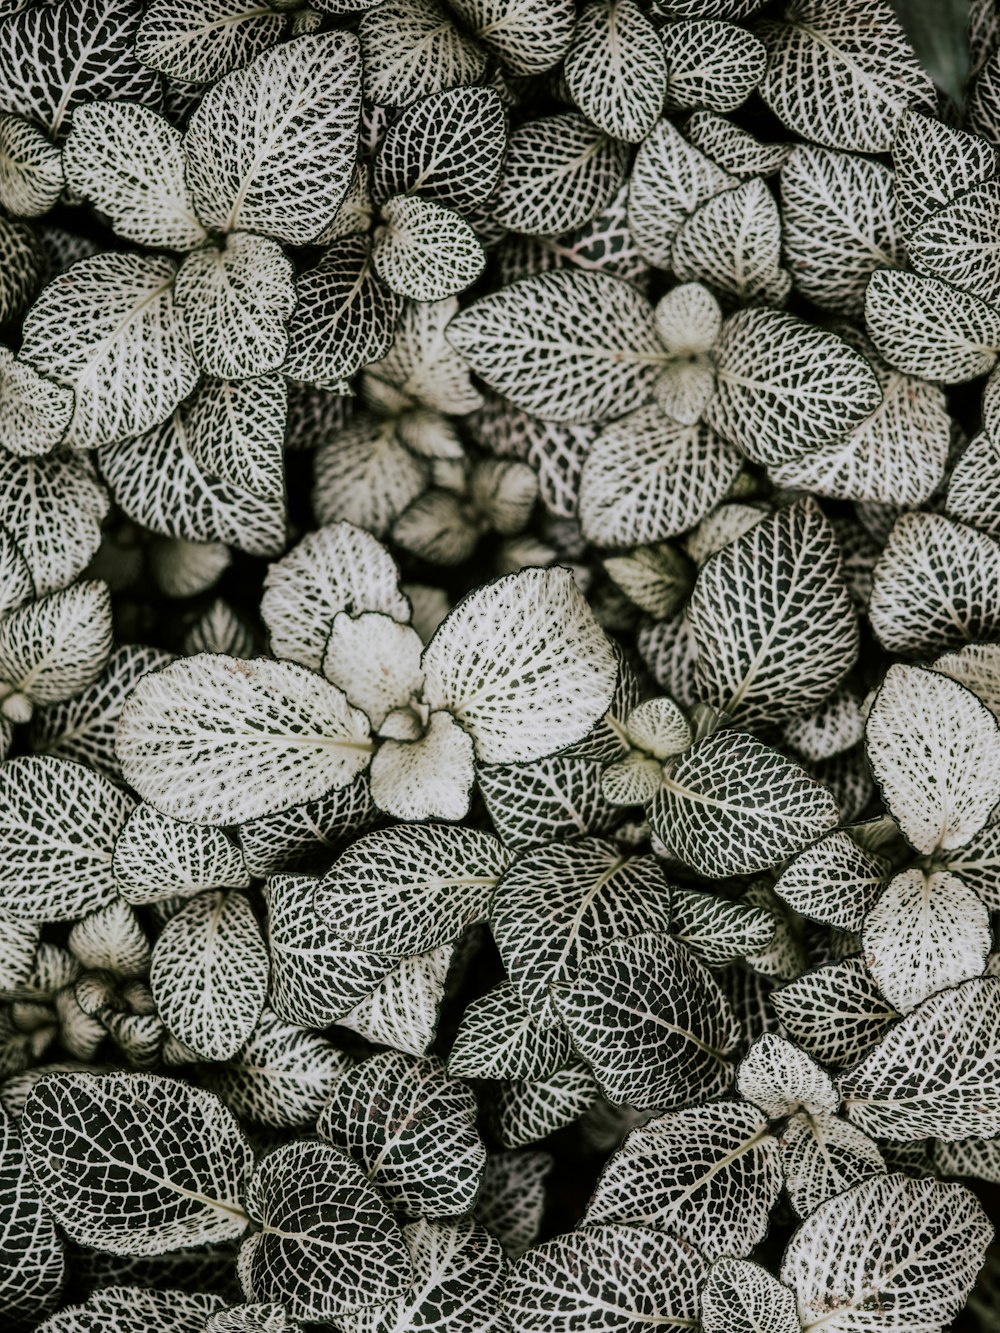 fotografia in scala di grigi di piante